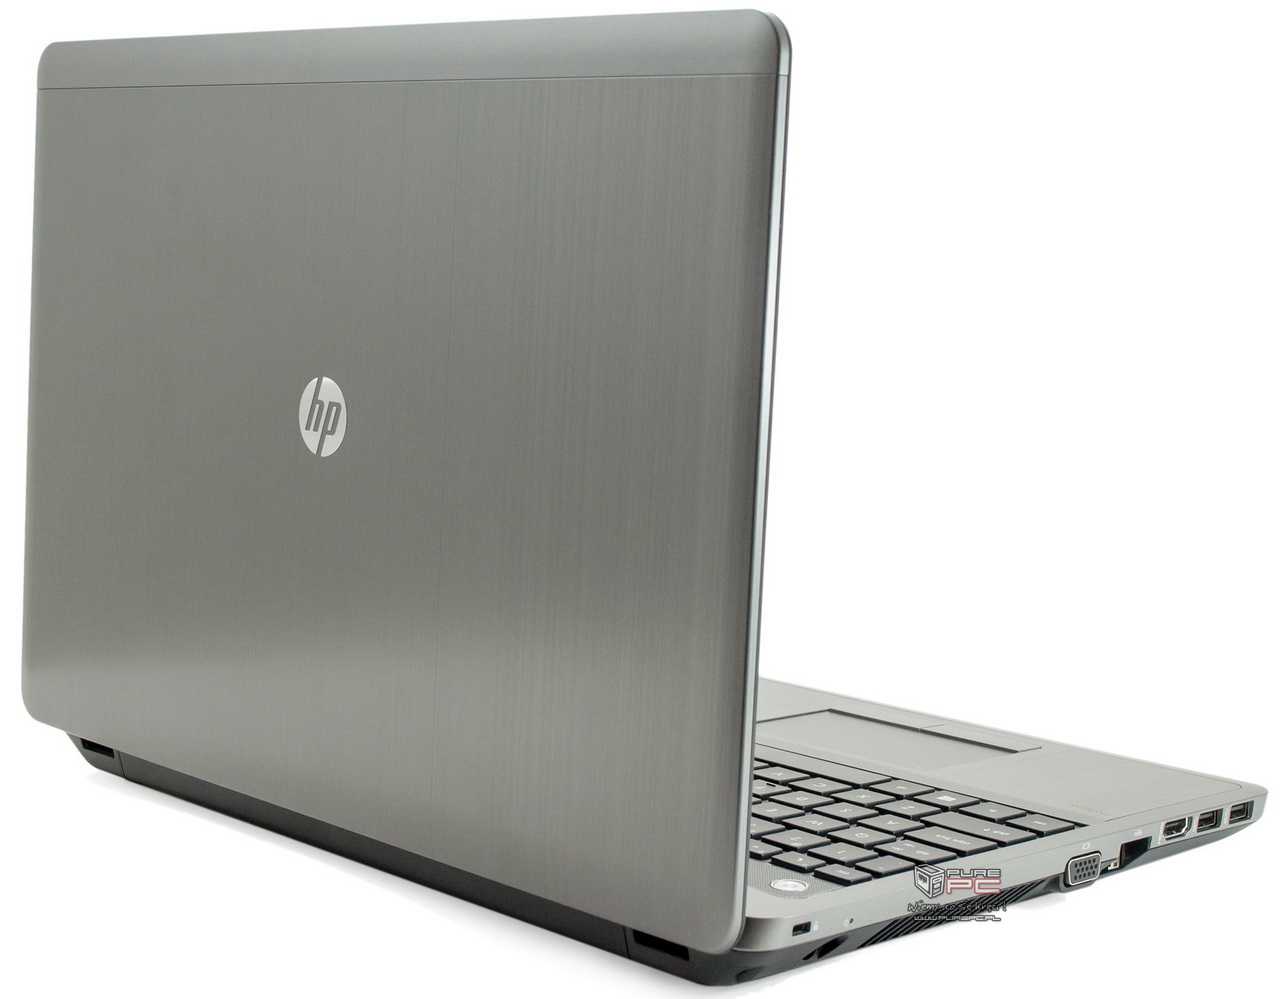 Ноутбук HP ProBook 4540s (C4Y61EA) - подробные характеристики обзоры видео фото Цены в интернет-магазинах где можно купить ноутбук HP ProBook 4540s (C4Y61EA)